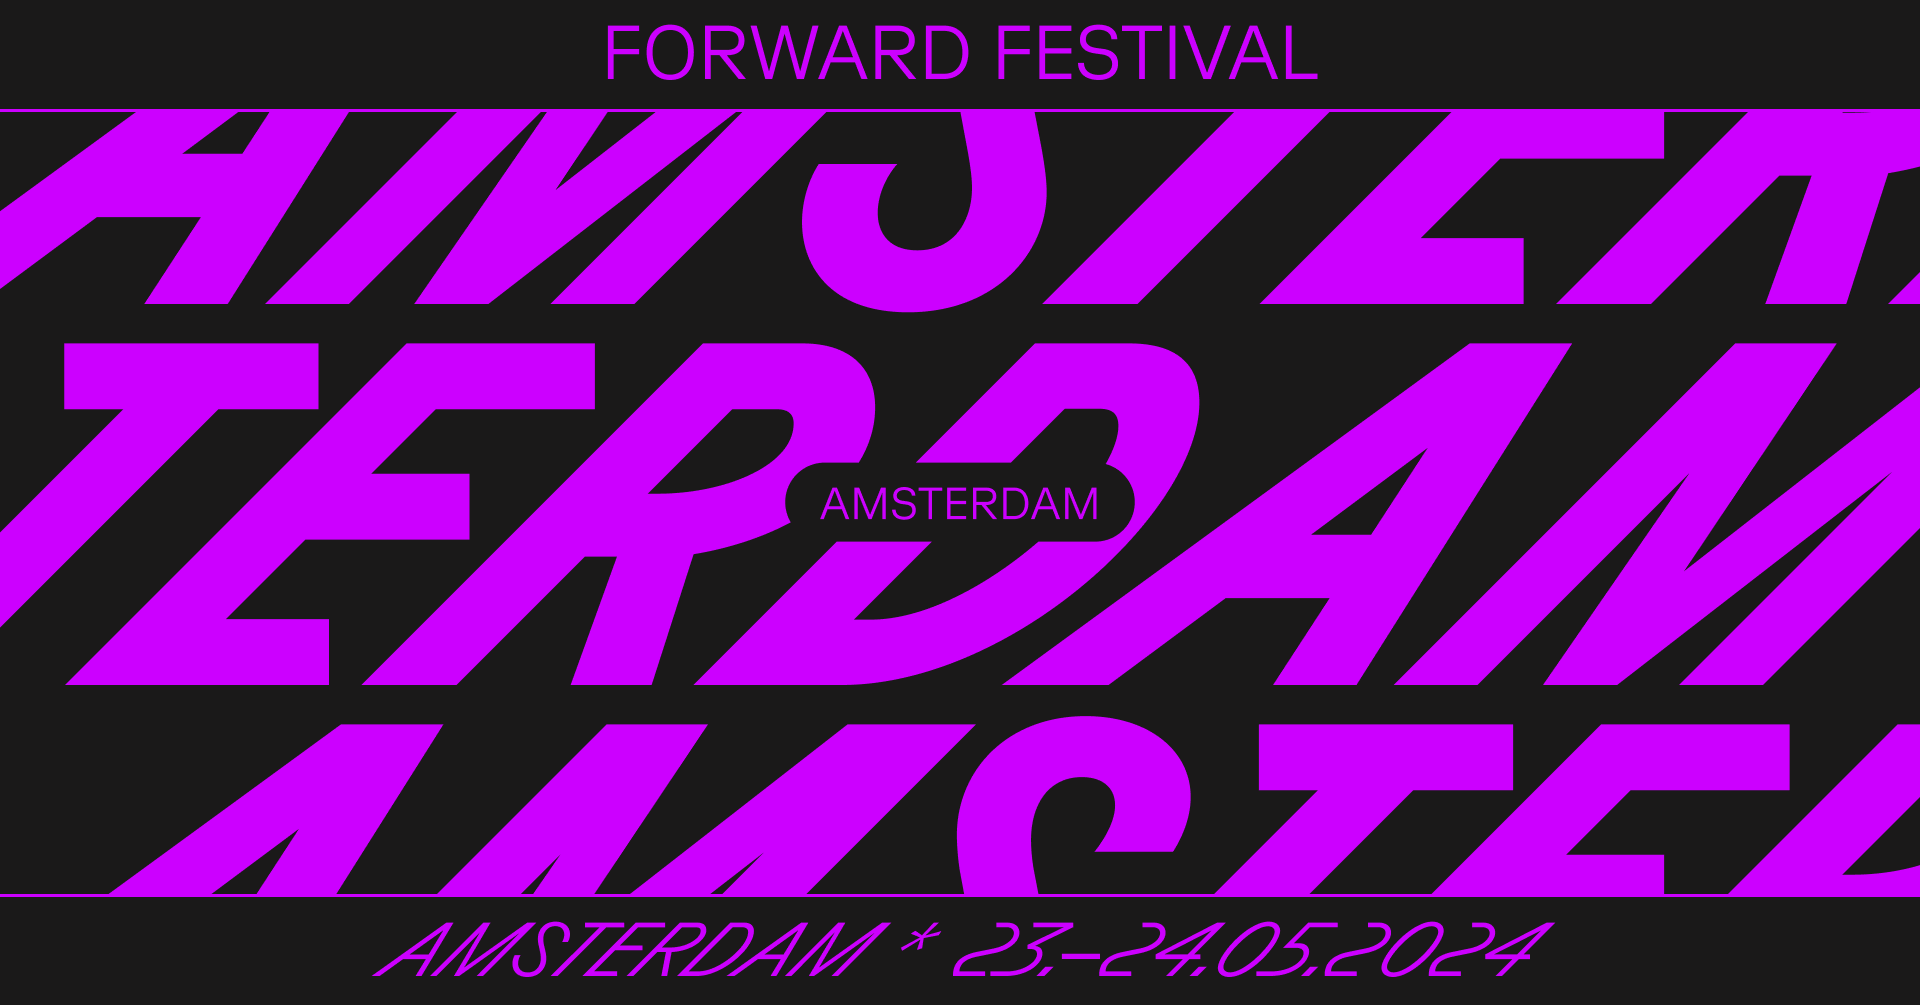 Forward Festival Amsterdam